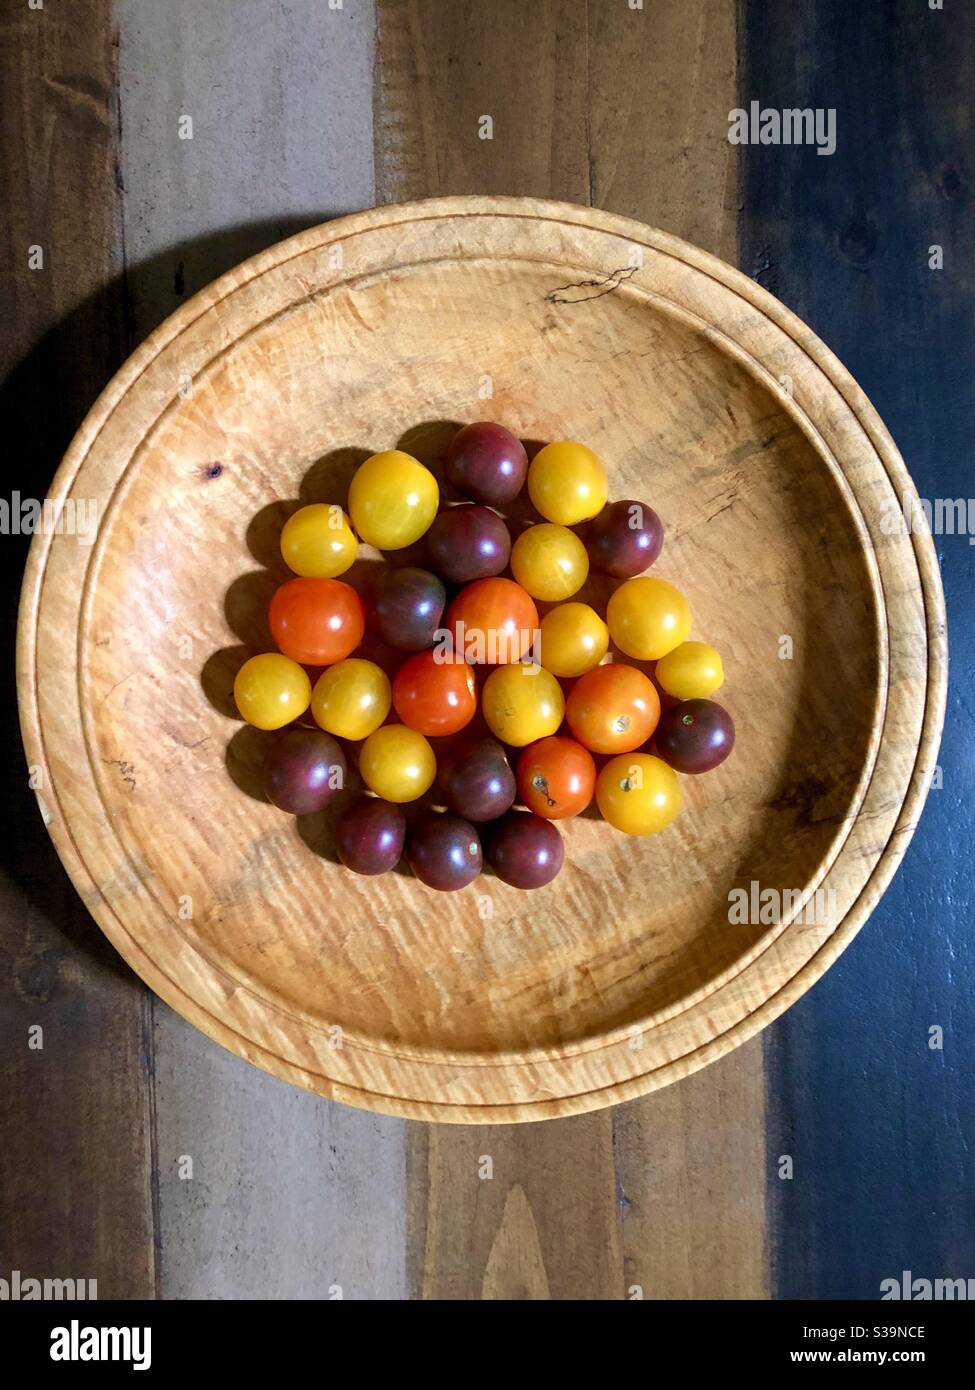 Vue d'ensemble d'une variété de tomates en fleur colorées dans un bol rond en bois. Banque D'Images